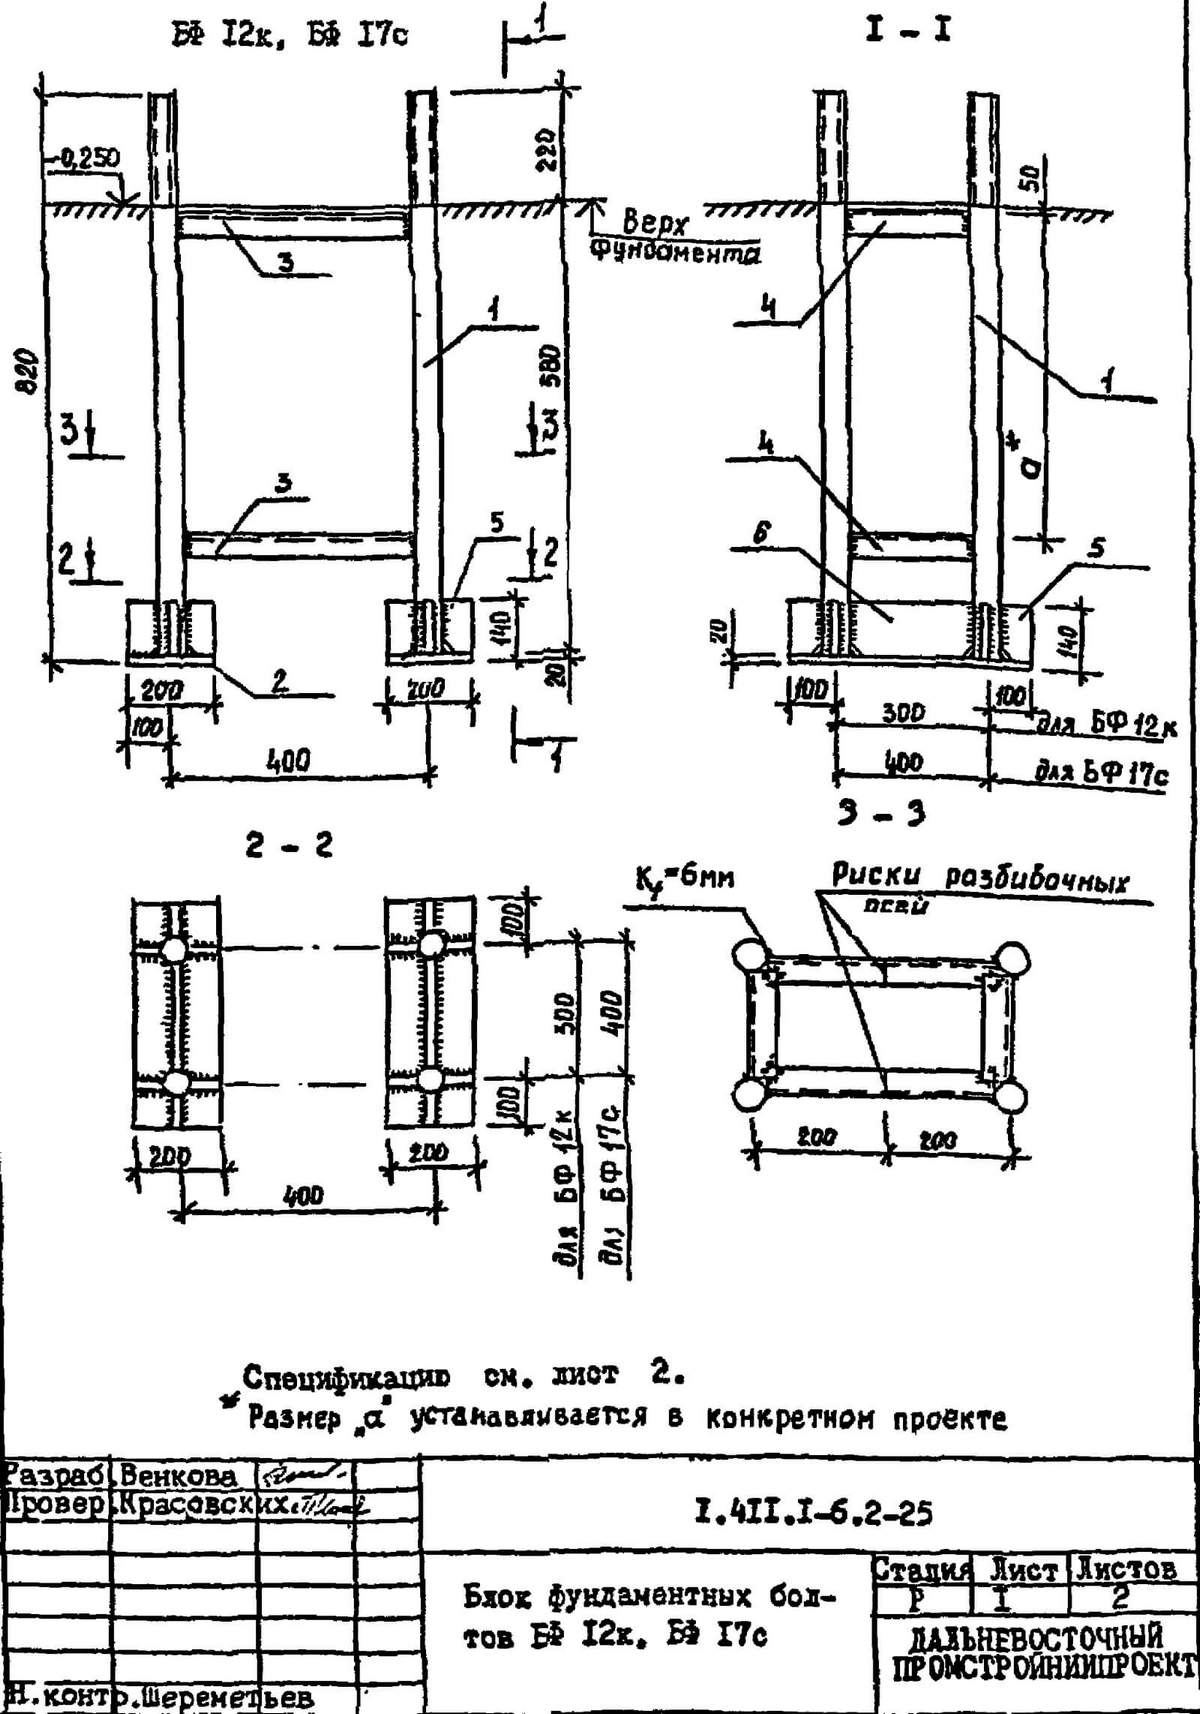 Блоки фундаментных болтов БФ 12к и БФ 17с чертежи